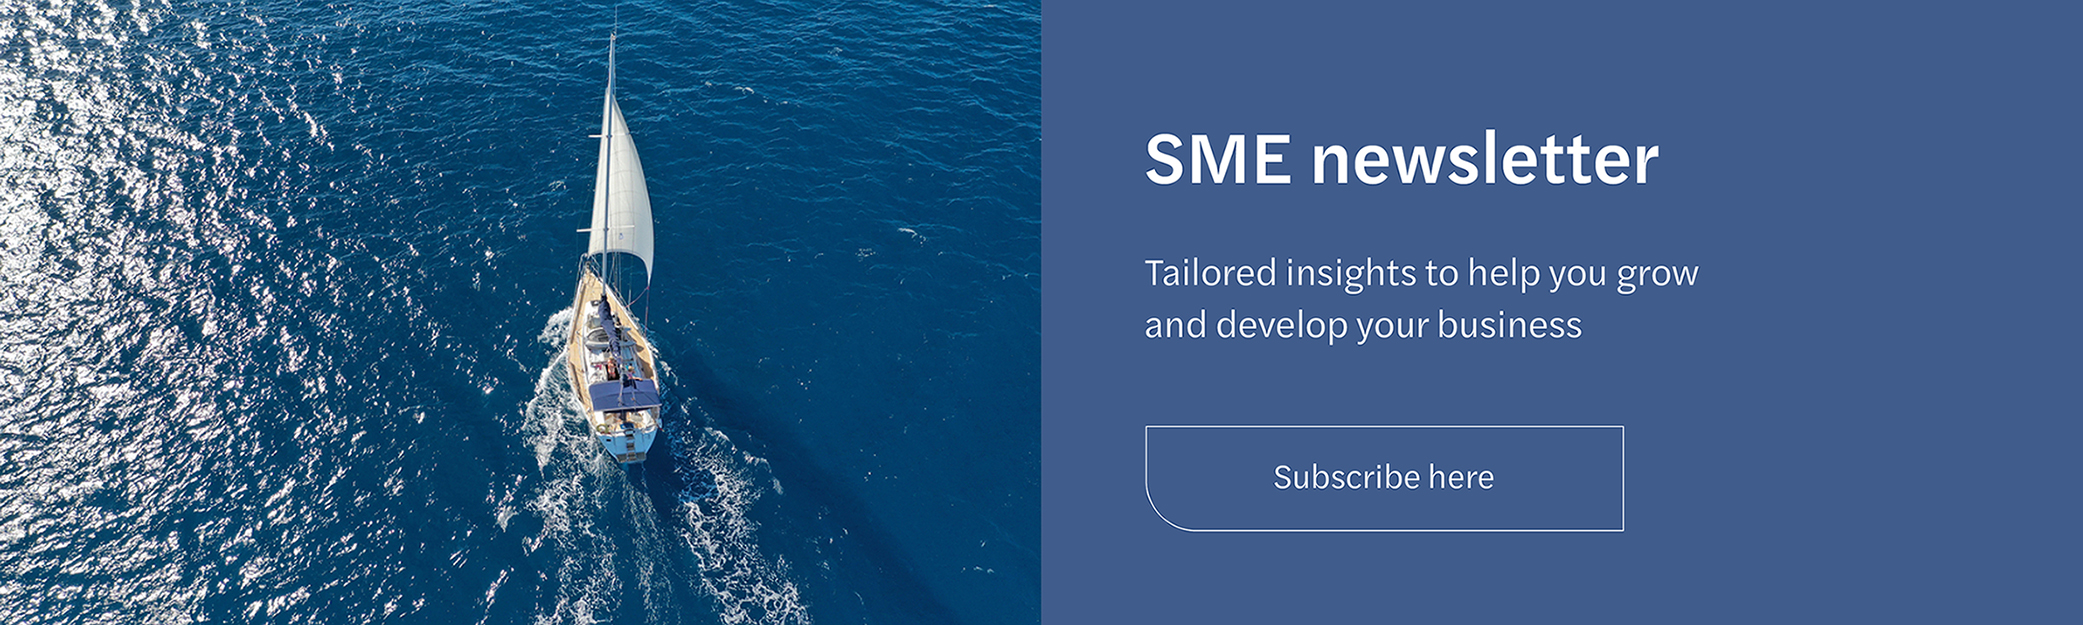 SME newsletter banner